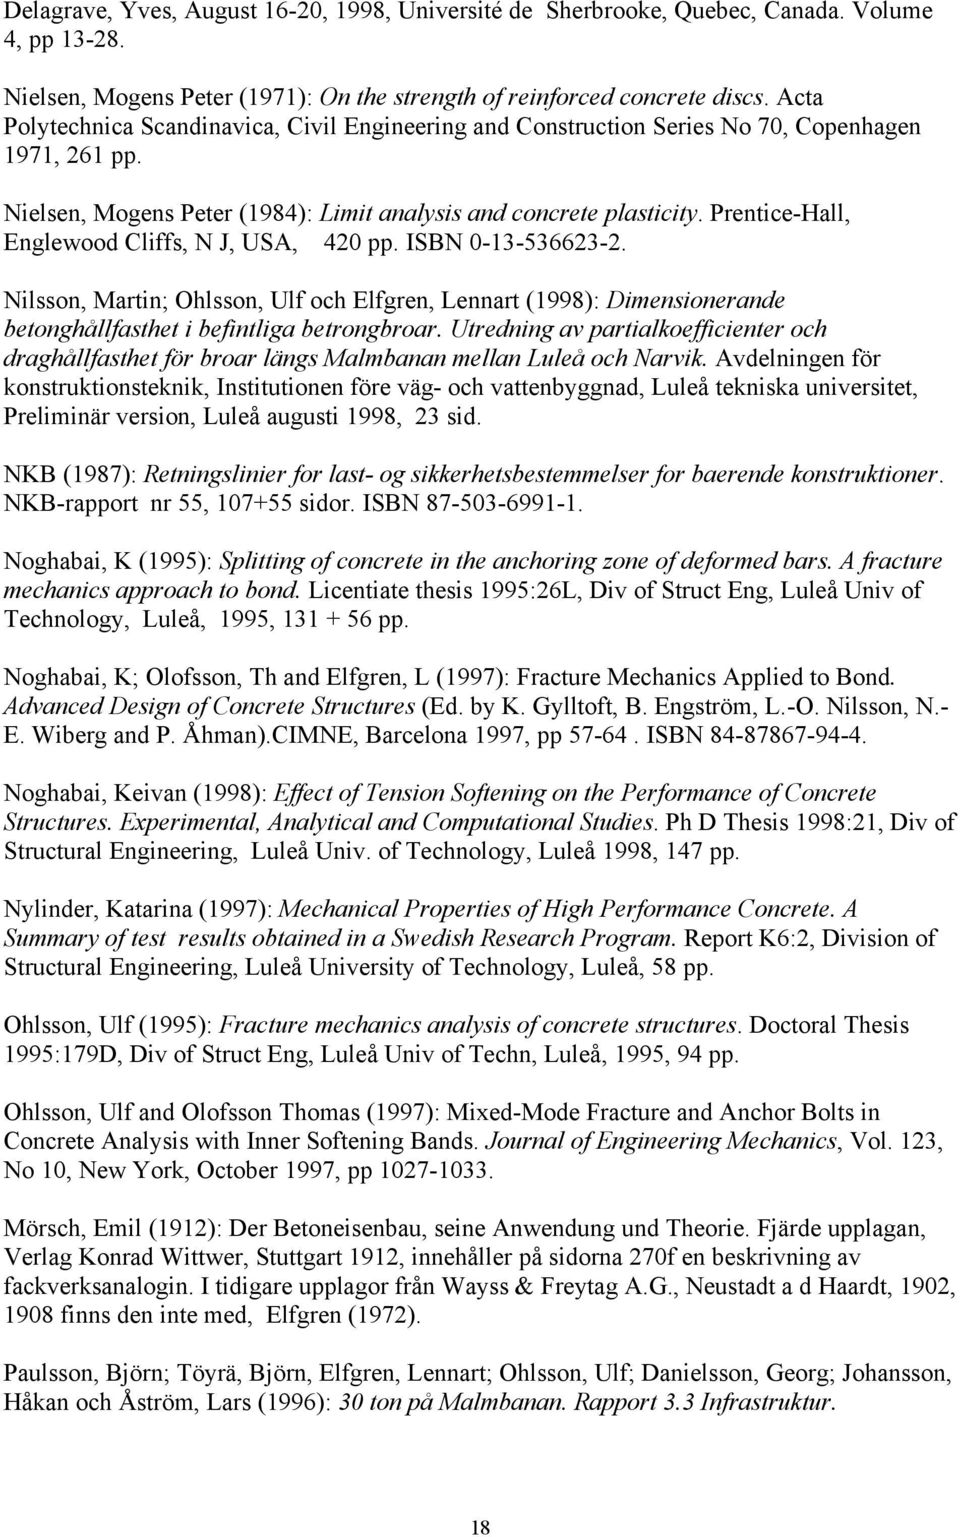 Prentice-Hall, Englewood Cliffs, N J, USA, 420 pp. ISBN 0-13-536623-2. Nilsson, Martin; Ohlsson, Ulf och Elfgren, Lennart (1998): Dimensionerande betonghållfasthet i befintliga betrongbroar.